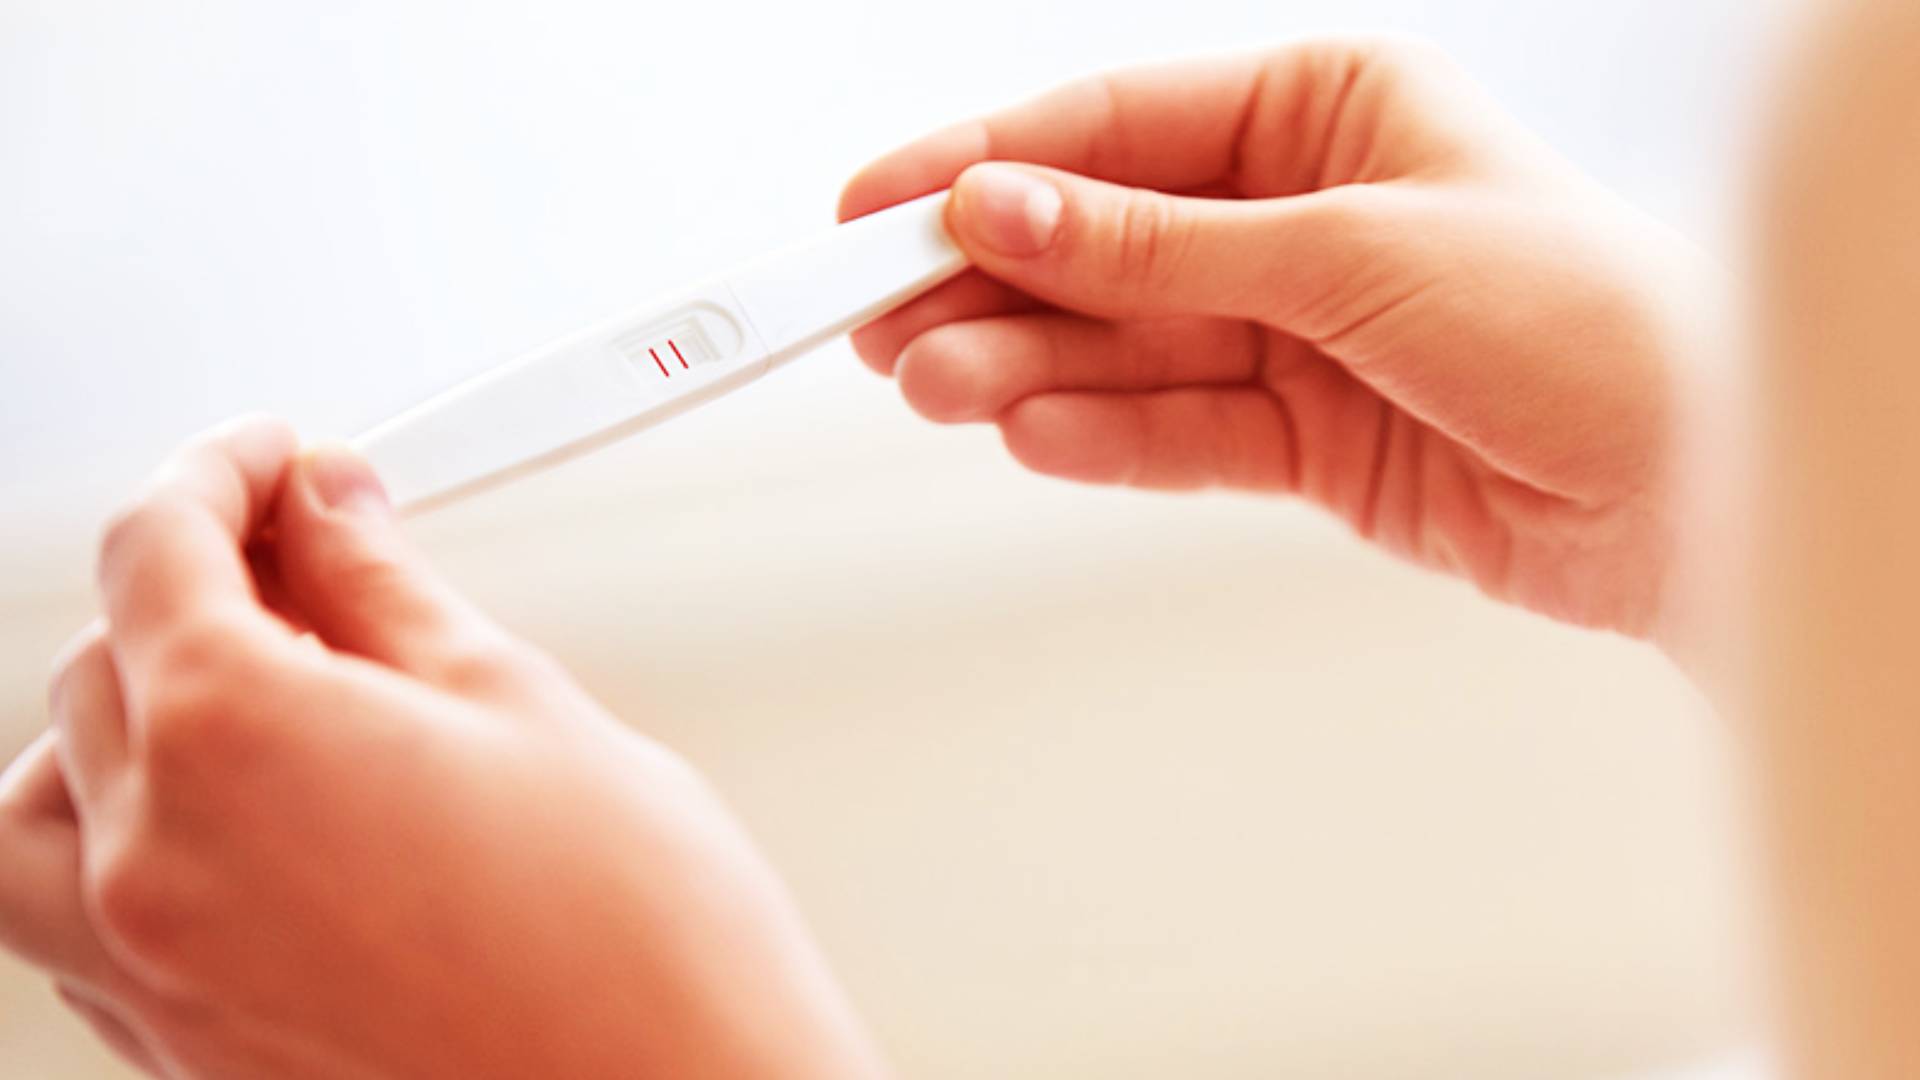 Pregnancy Test: घर बैठे ऐसे करें परफेक्ट प्रेग्नेंसी टेस्ट, इन दो चीजों को लेकर महिलाएं अक्सर रहती हैं कंफ्यूज